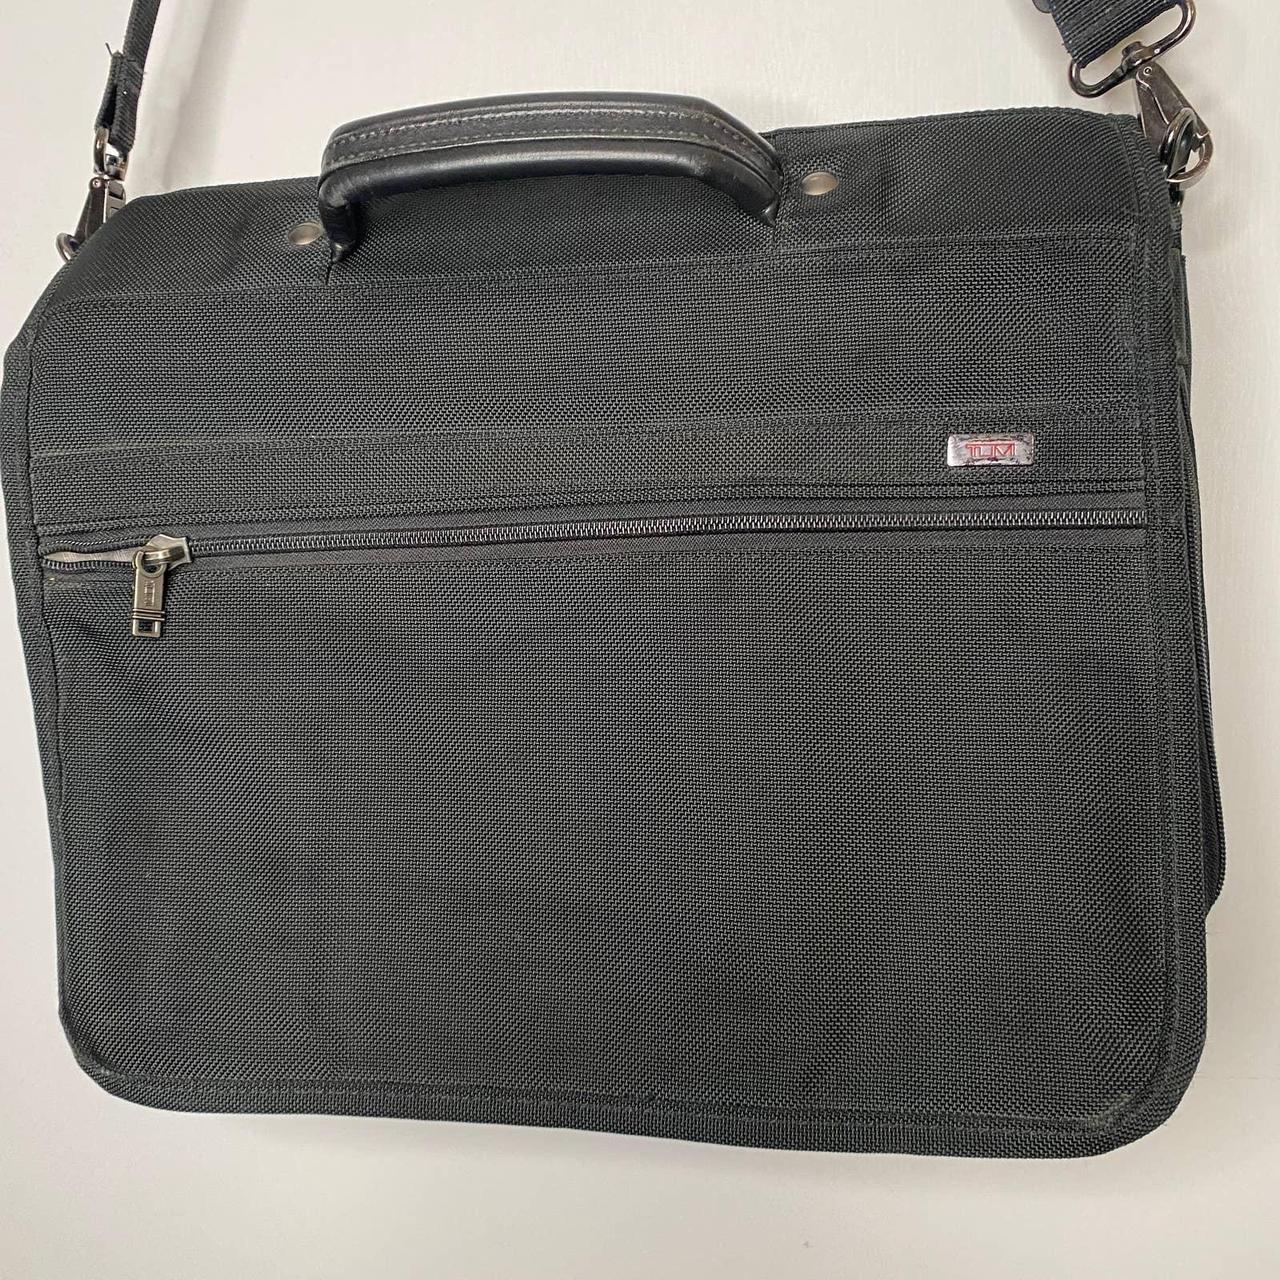 Product Image 1 - Tumi black laptop case travel